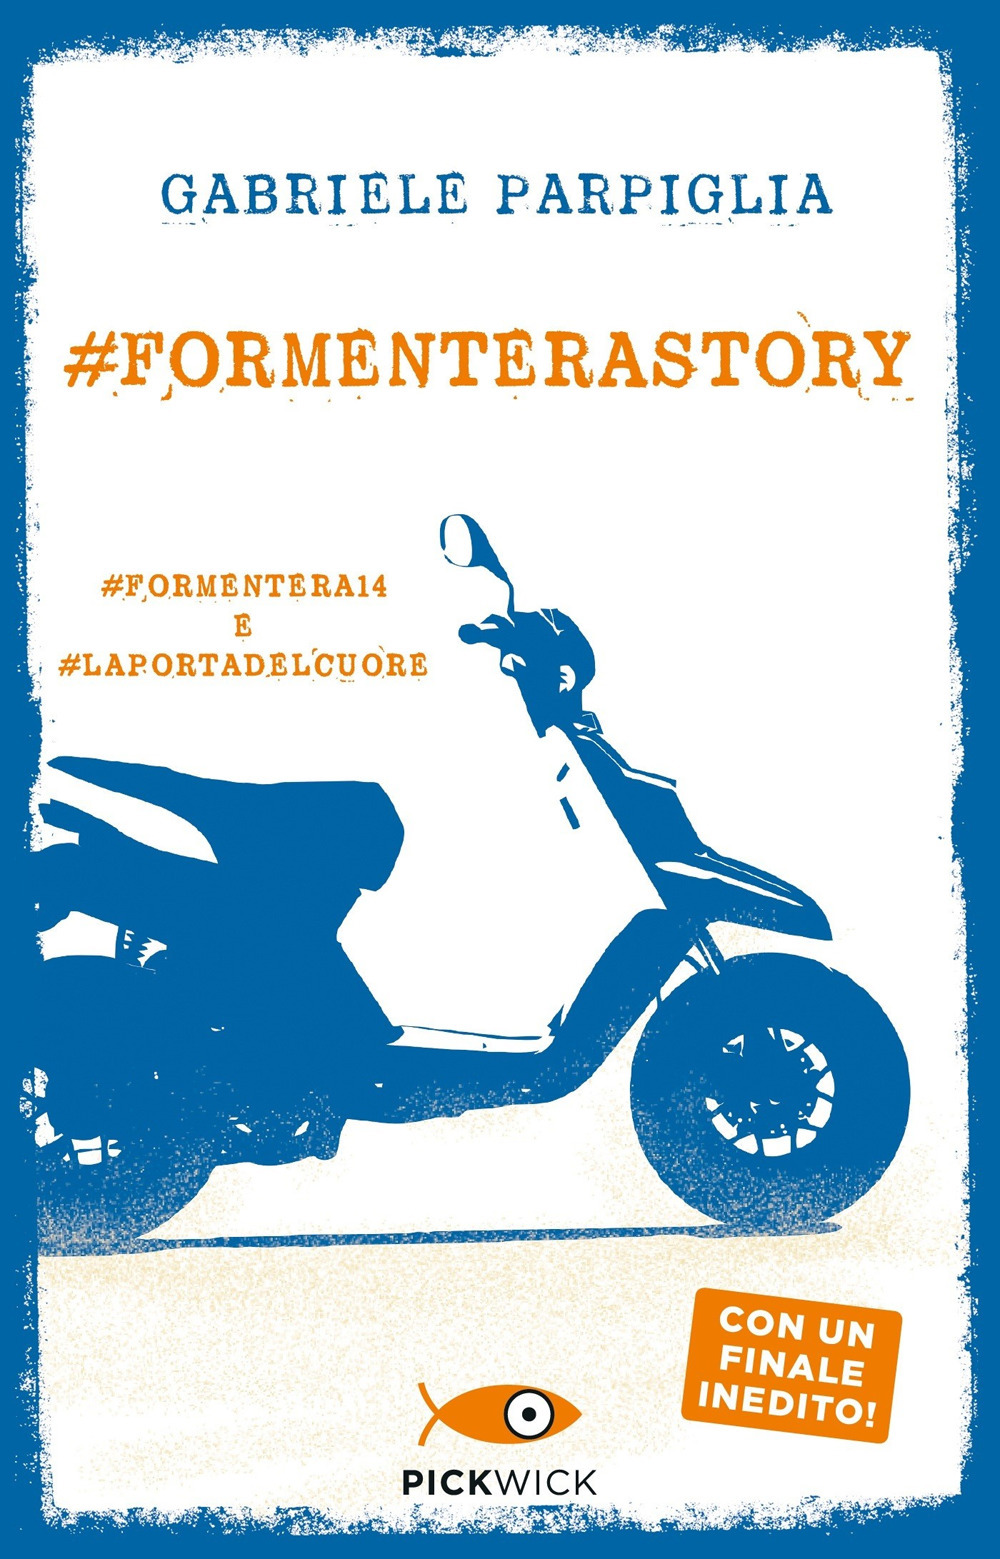 Image of #Formenterastory: #Formentera14 e #Laportadelcuore